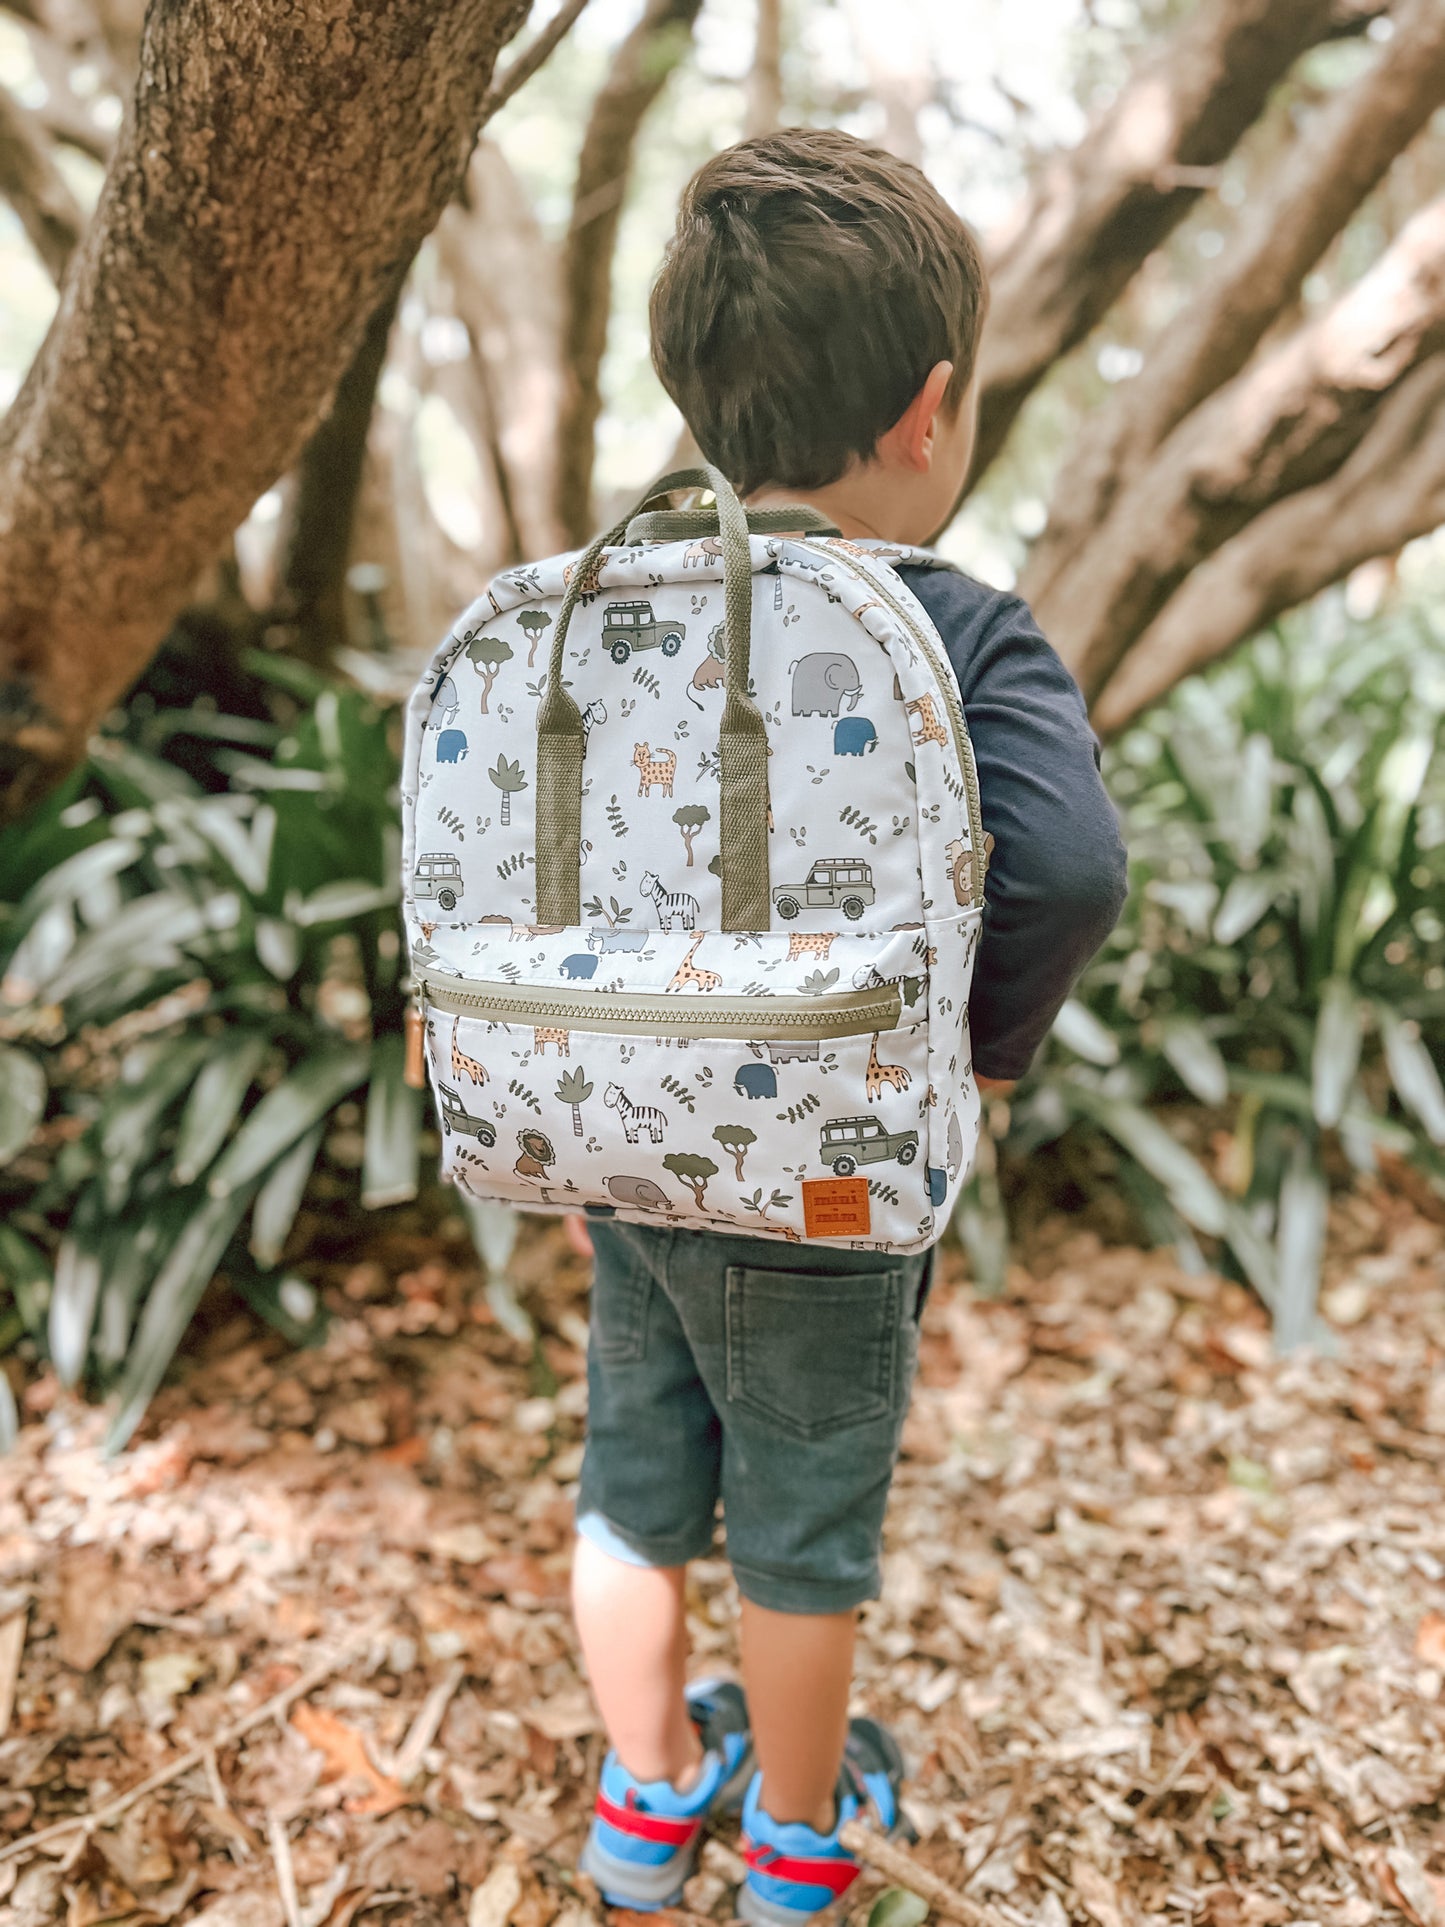 Kids Backpack - The Adventurer